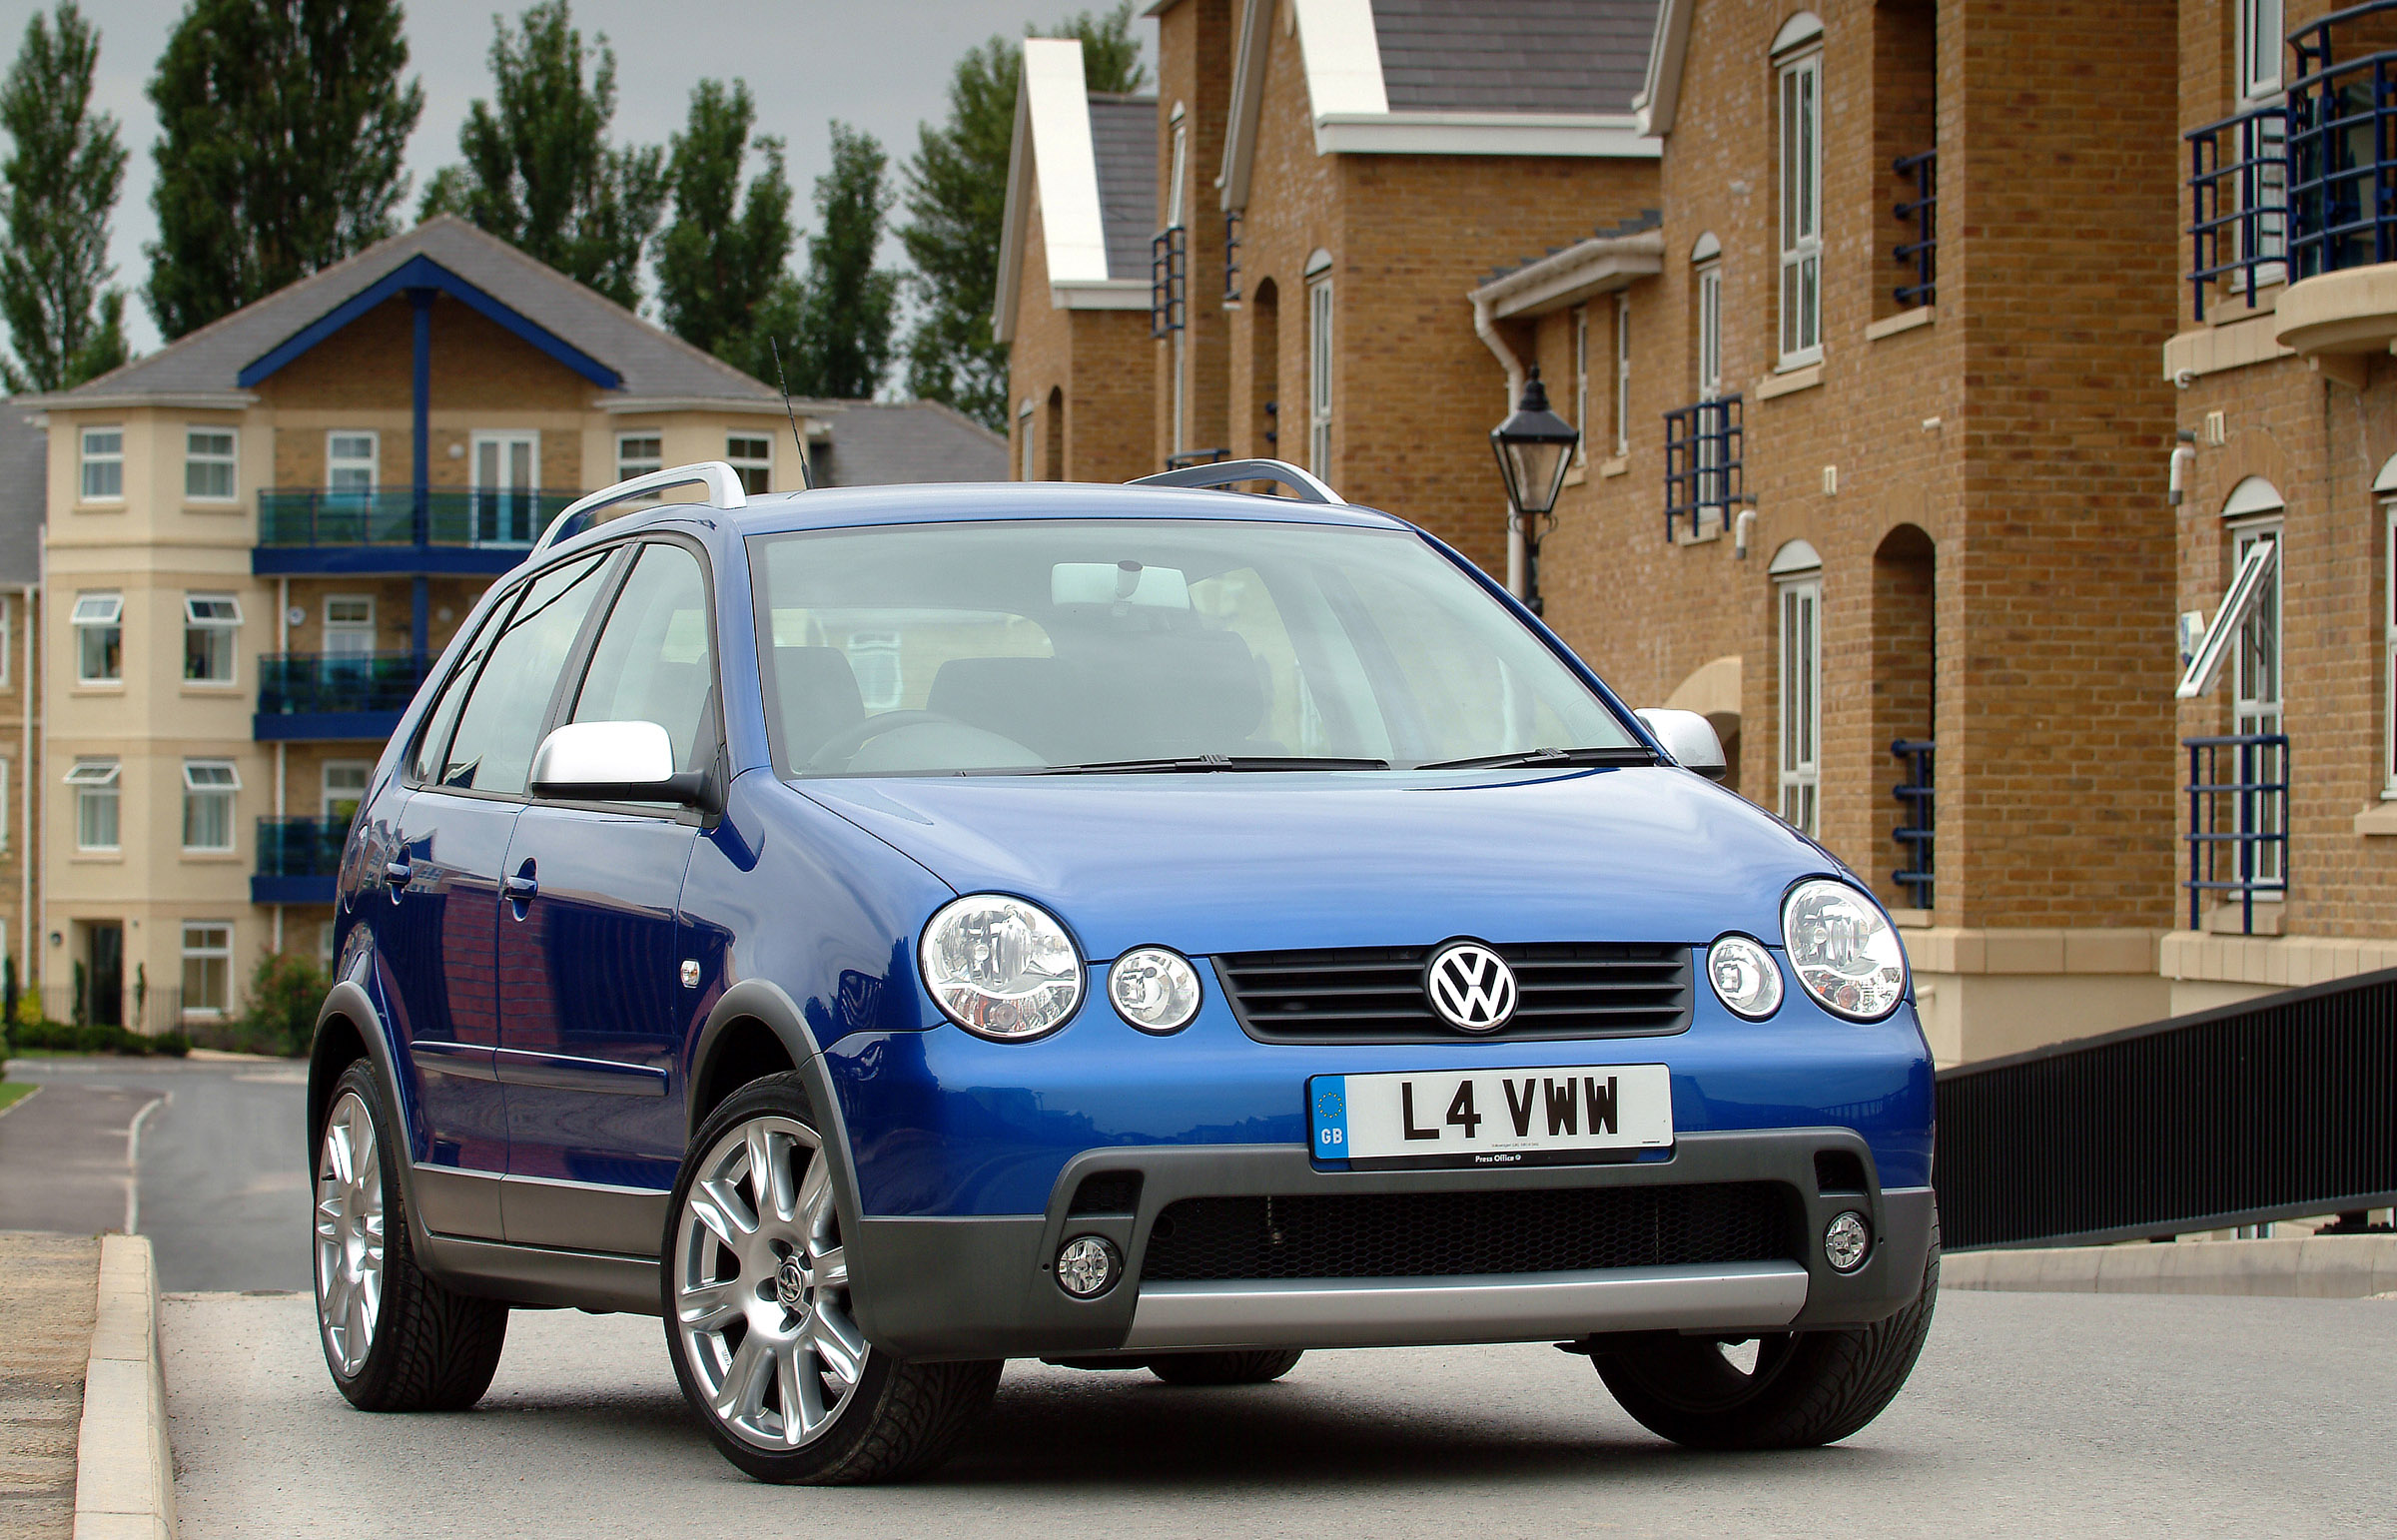 Фольксваген фольц. VW Polo 4. Volkswagen Polo 2004 года. Фольксваген поло 2004. Volkswagen Polo 4 поколения.